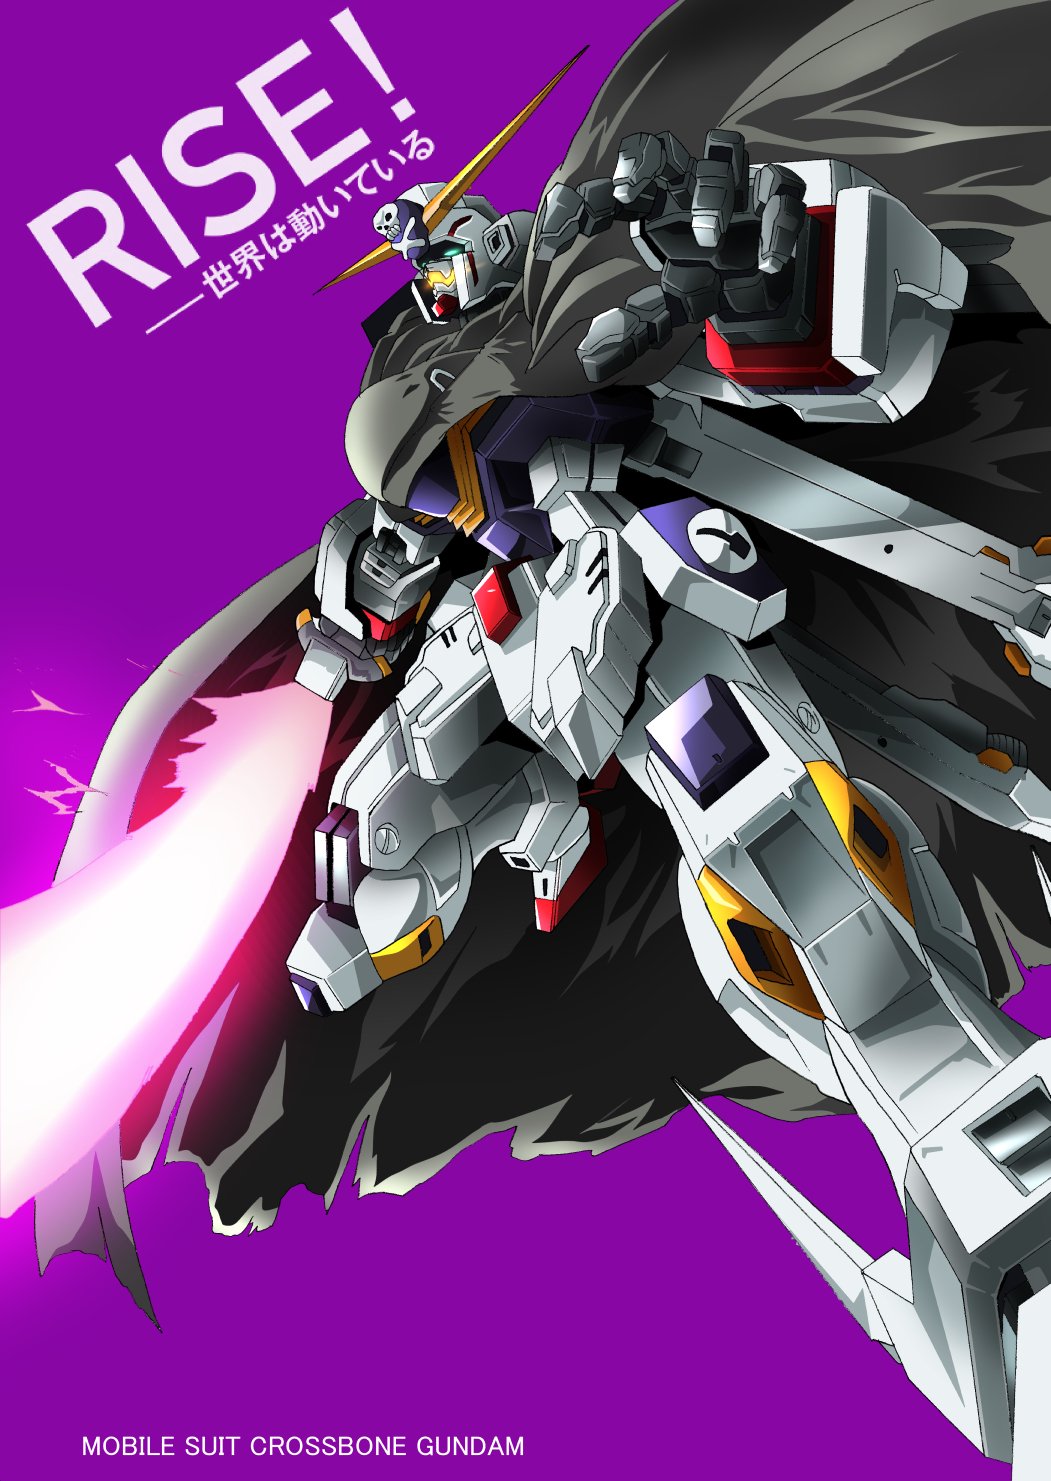 Anime Mechs Super Robot Taisen Mobile Suit Crossbone Gundam Gundam Crossbone Gundam X 1 Artwork Digi 1051x1481